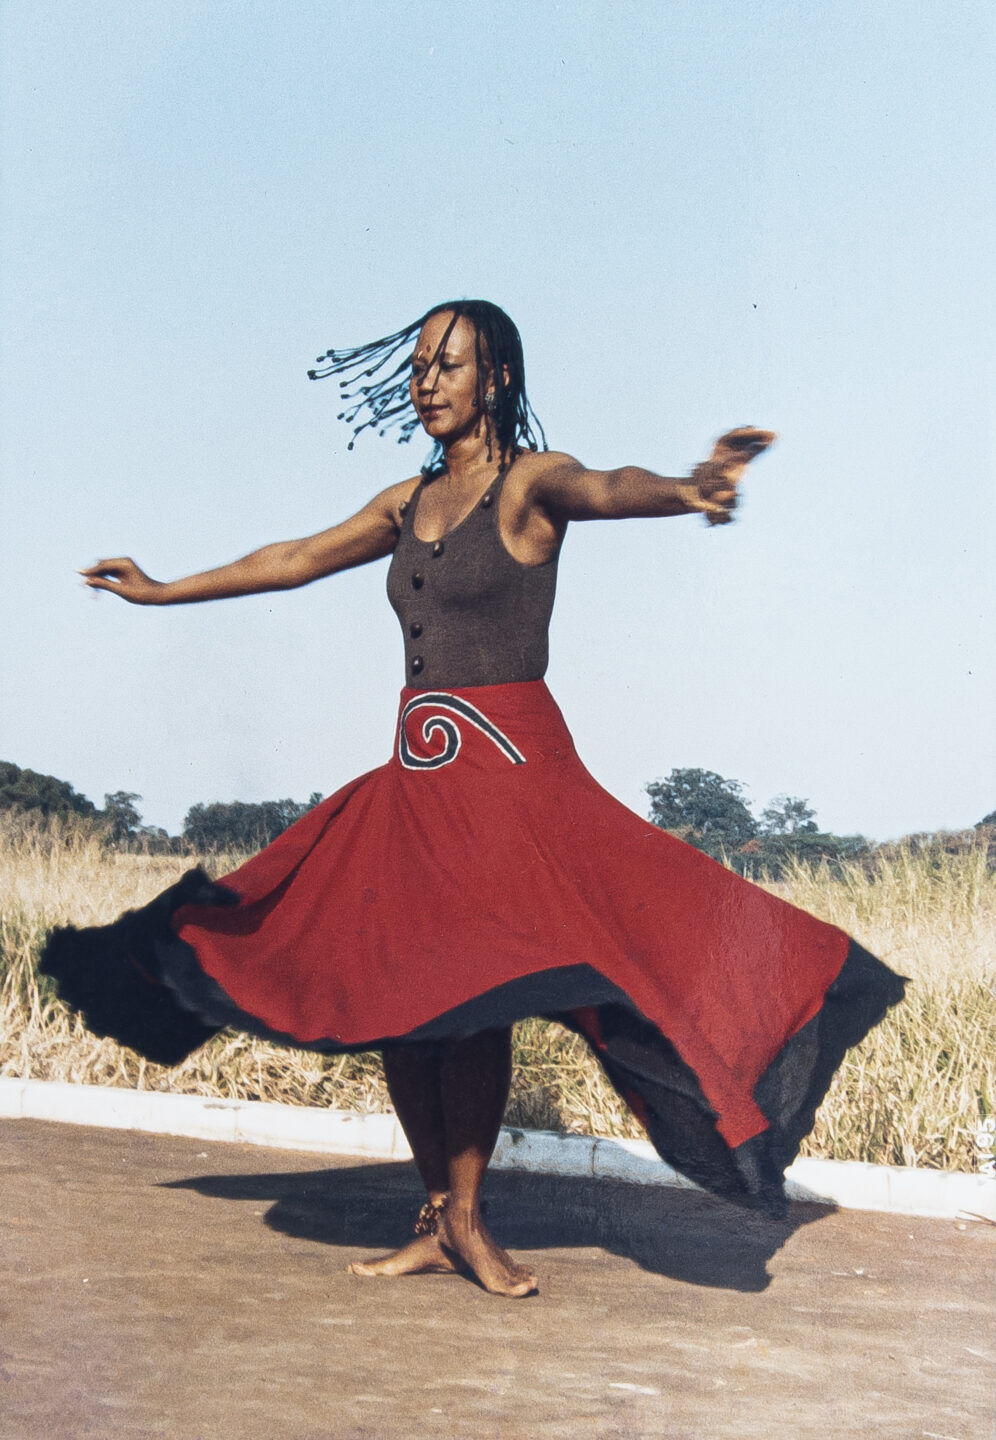 Foto de Inaicyra Falcão realizando performance. A artista é uma mulher negra e está rodando com os braços estendidos, vestindo uma regata marrom e uma saia vermelha com barra preta que está esvoaçando com o rodar. Ela está numa estrada de concreto em frente a um campo.